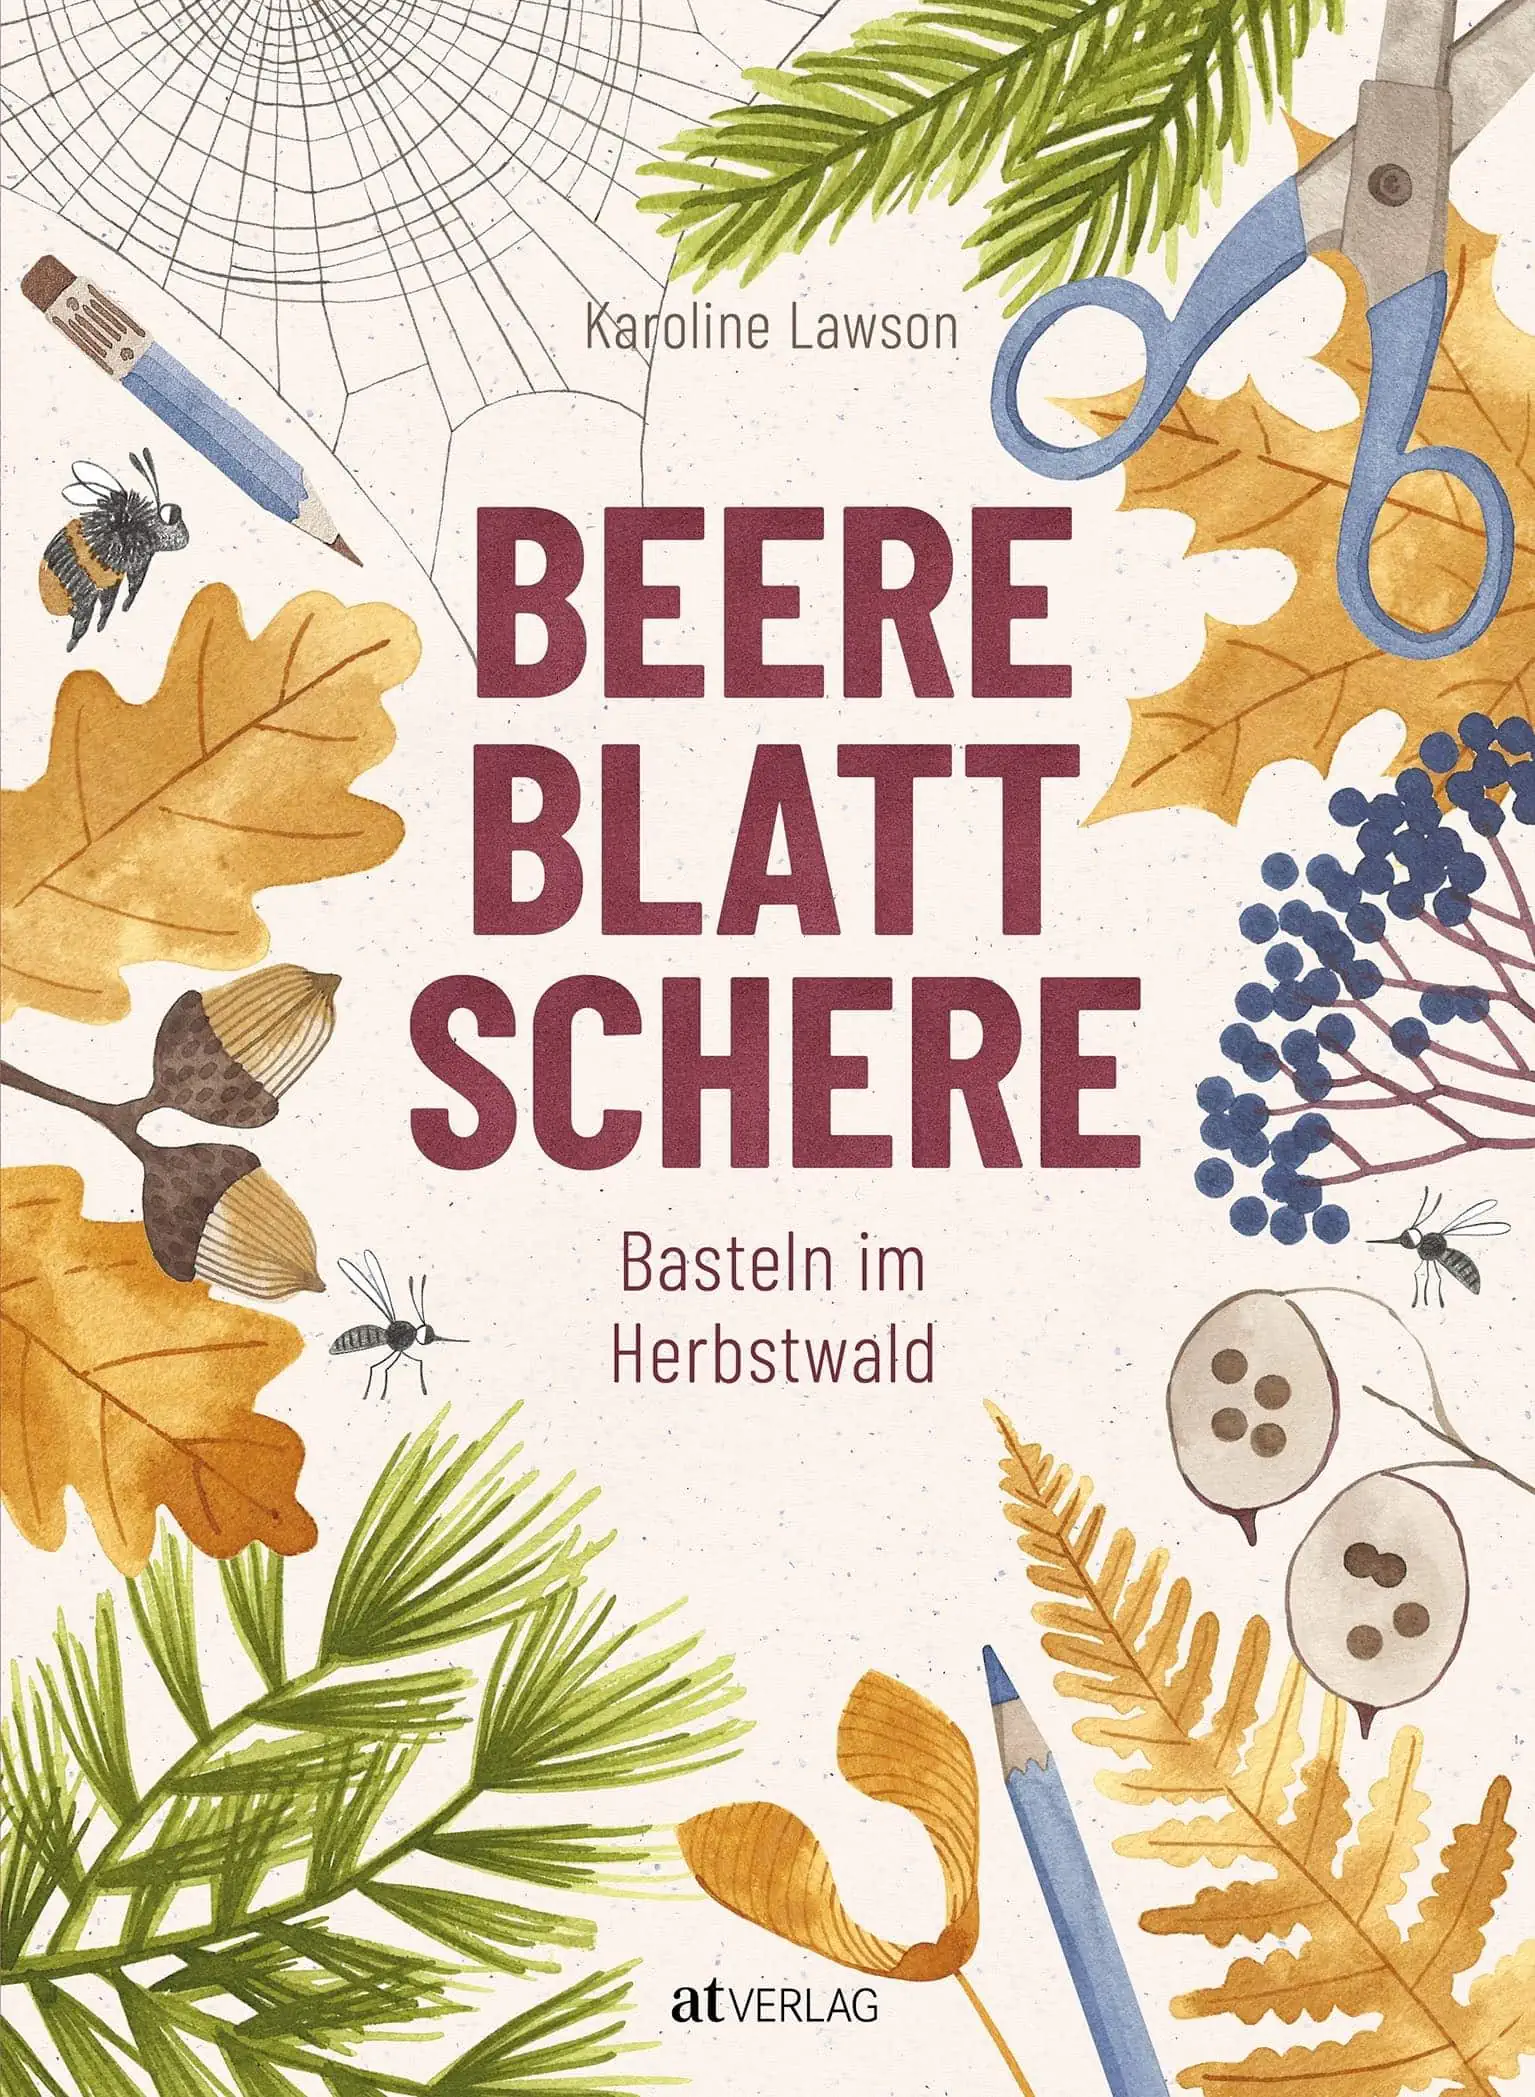 Herbstliches Basteln Mit Kindern Und Naturmaterialien: Rindenmaske Aus Baumrinde // Himbeer